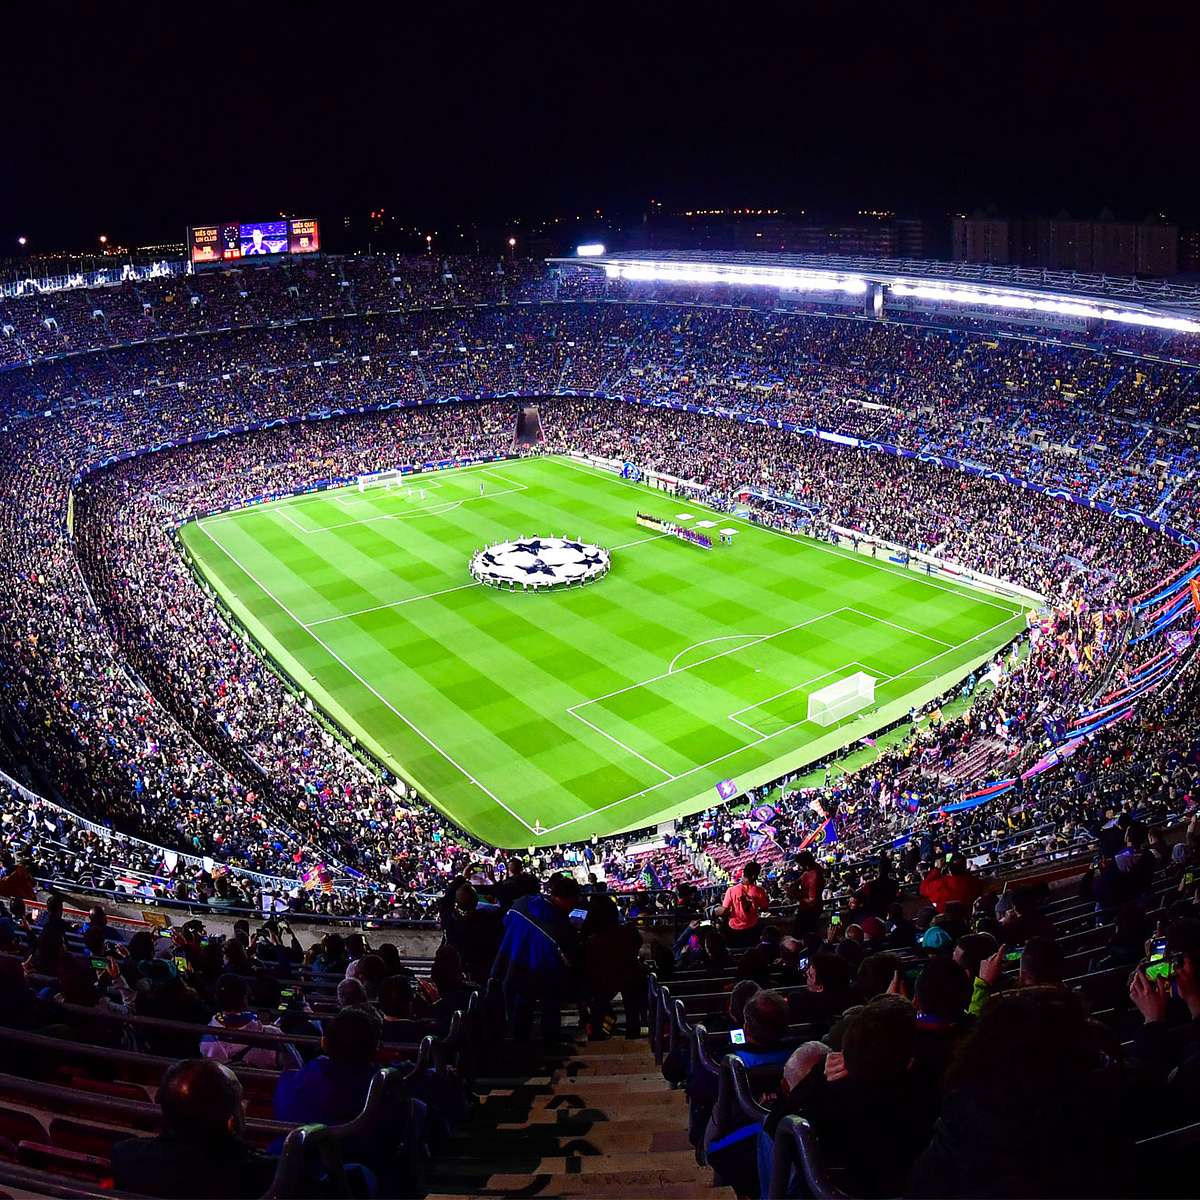 Das Camp Nou ist das beliebteste Stadion auf Instagram